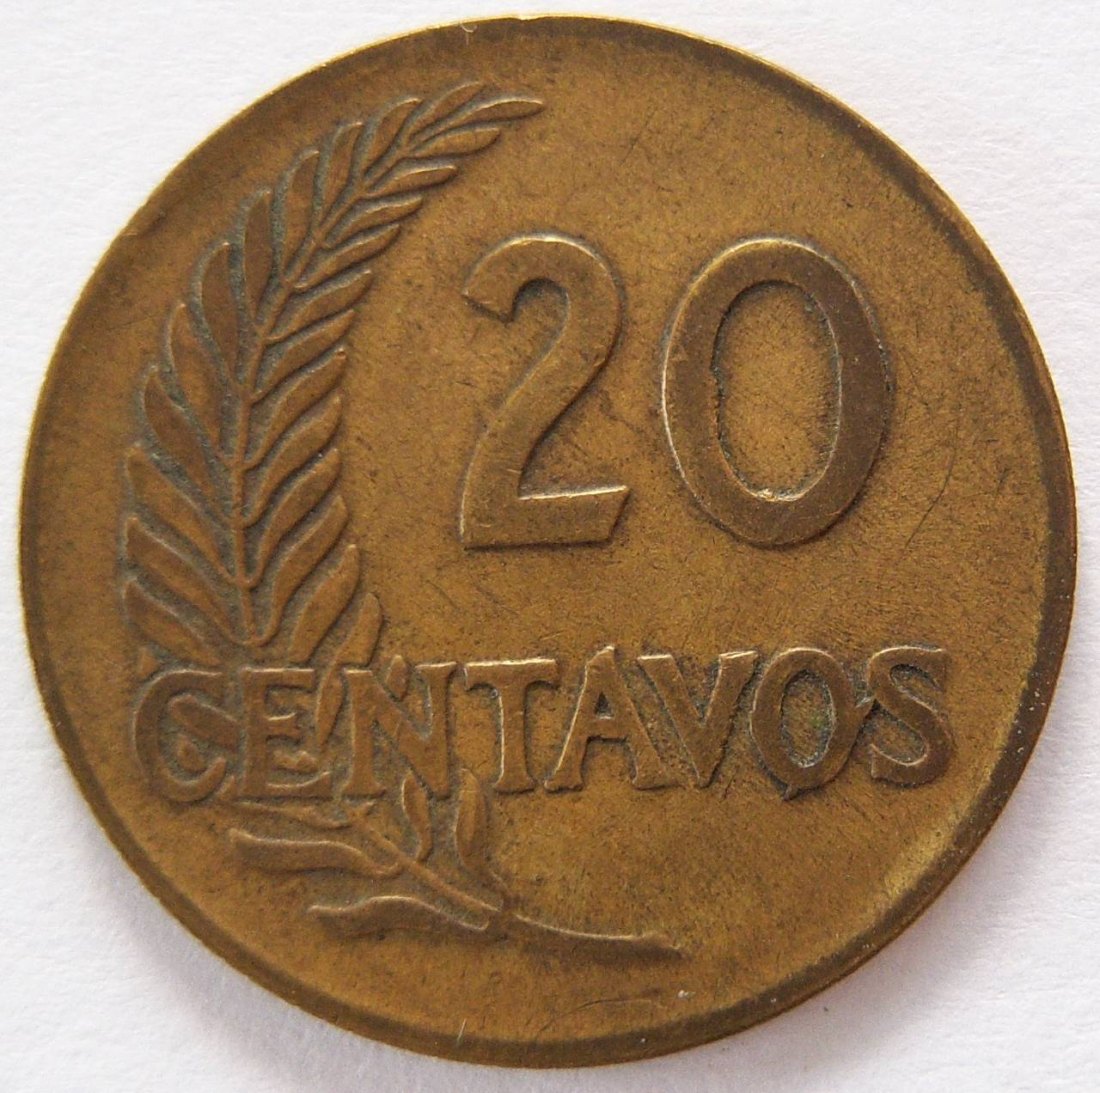  Peru 20 Centavos 1960   